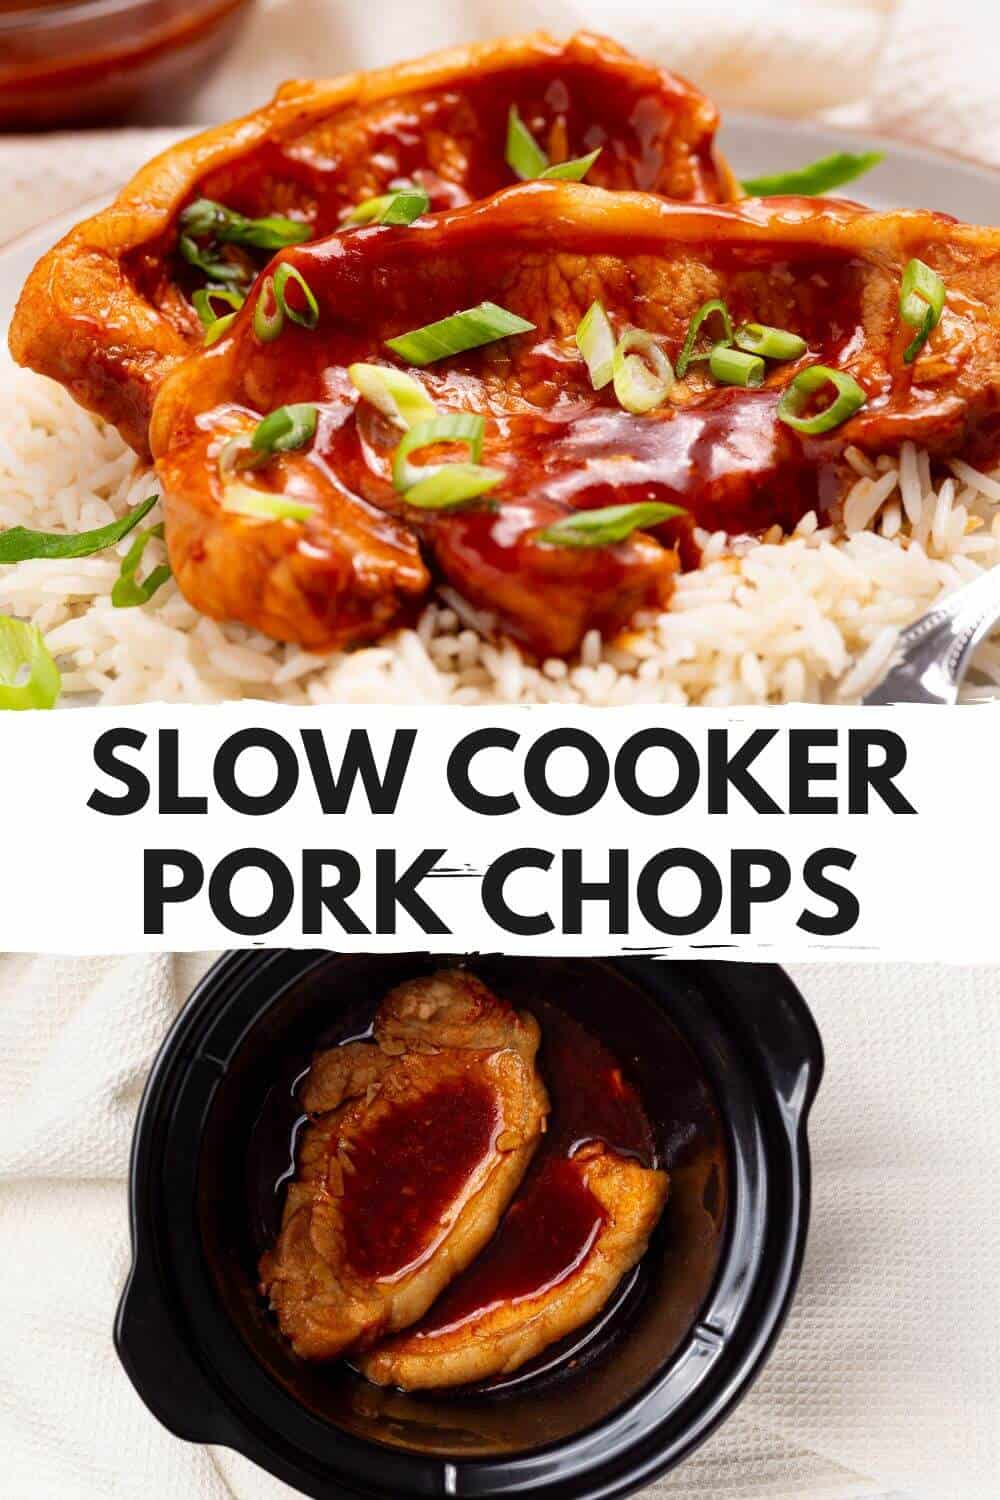 Slow cooker pork chops.